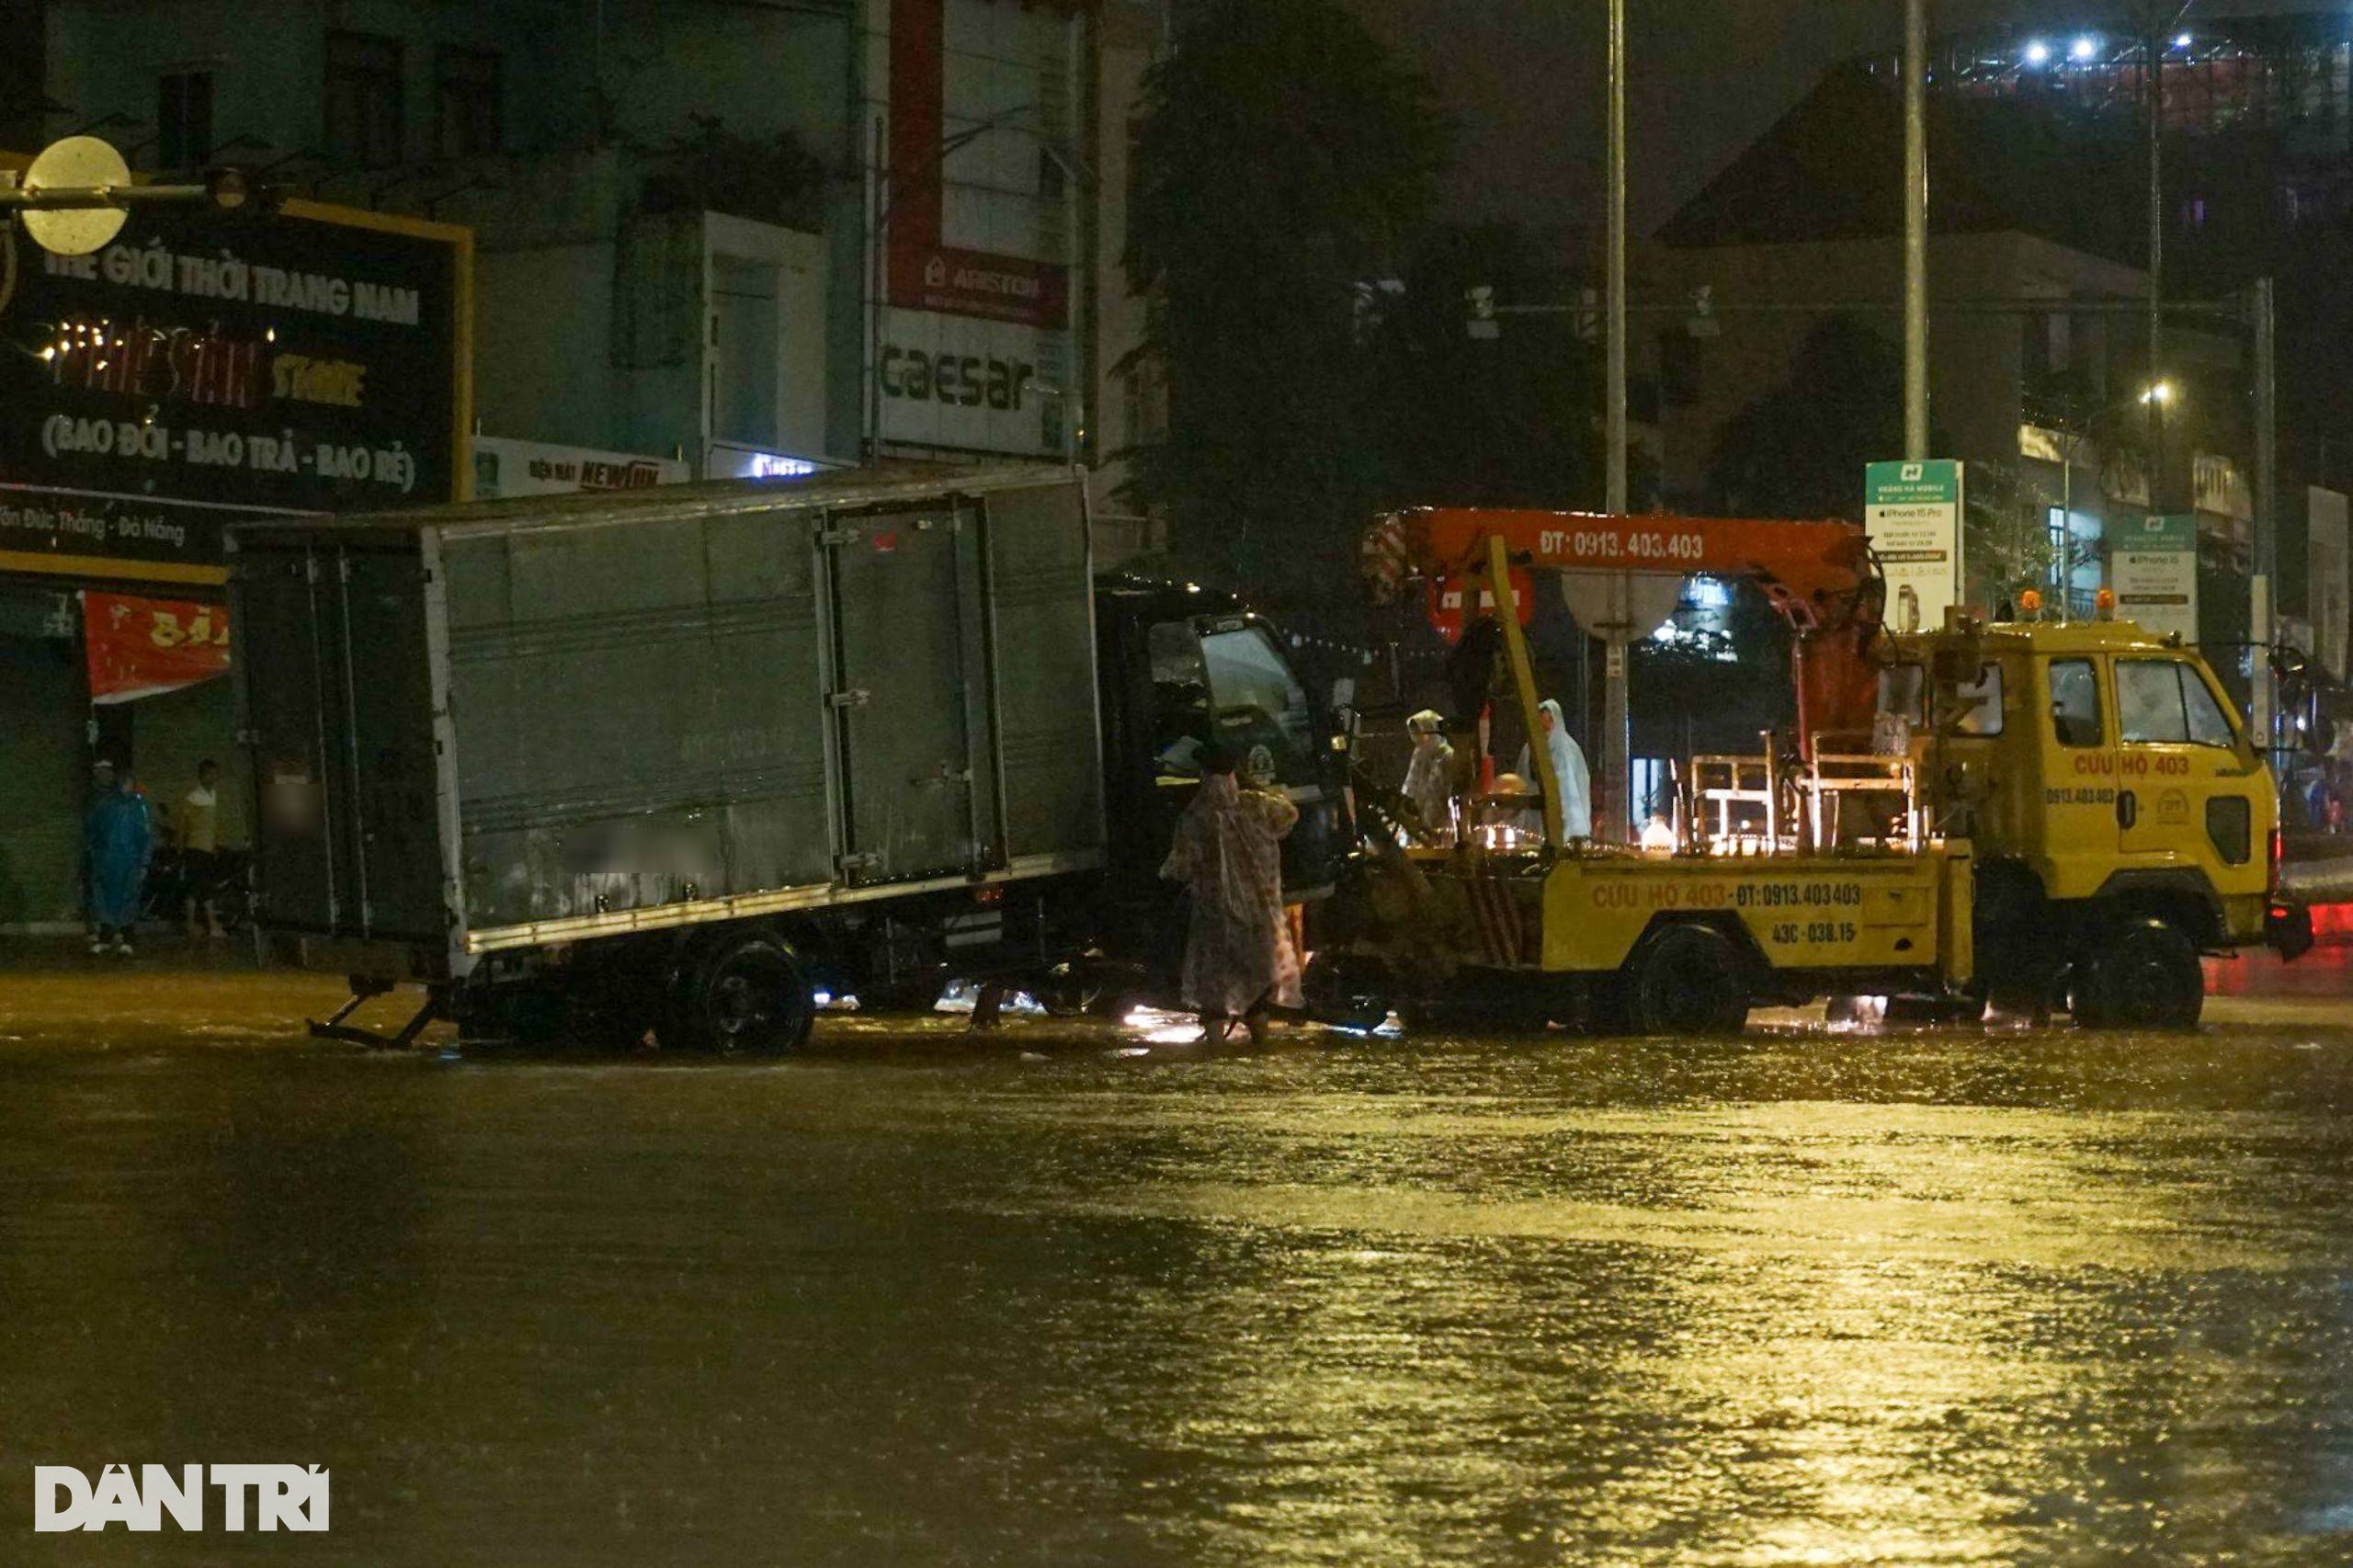 Tài xế bất lực để xe chìm trong nước trên đường phố Đà Nẵng - 3